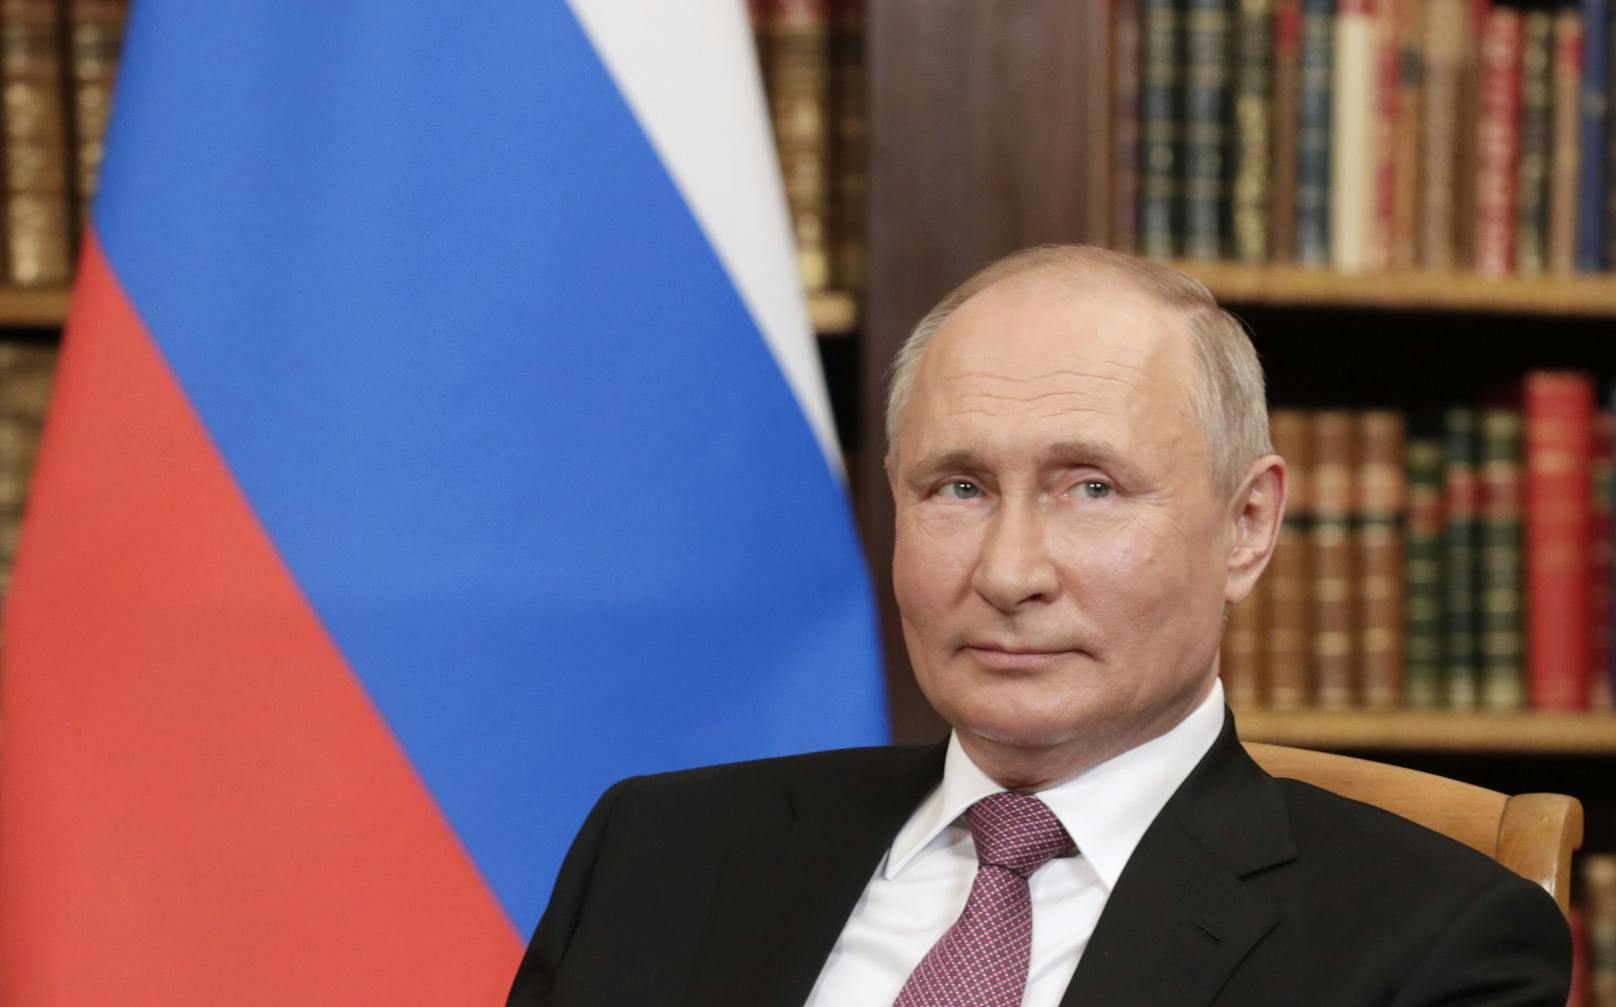 Putins Atomschlag – so läuft der ultimative Albtraum ab